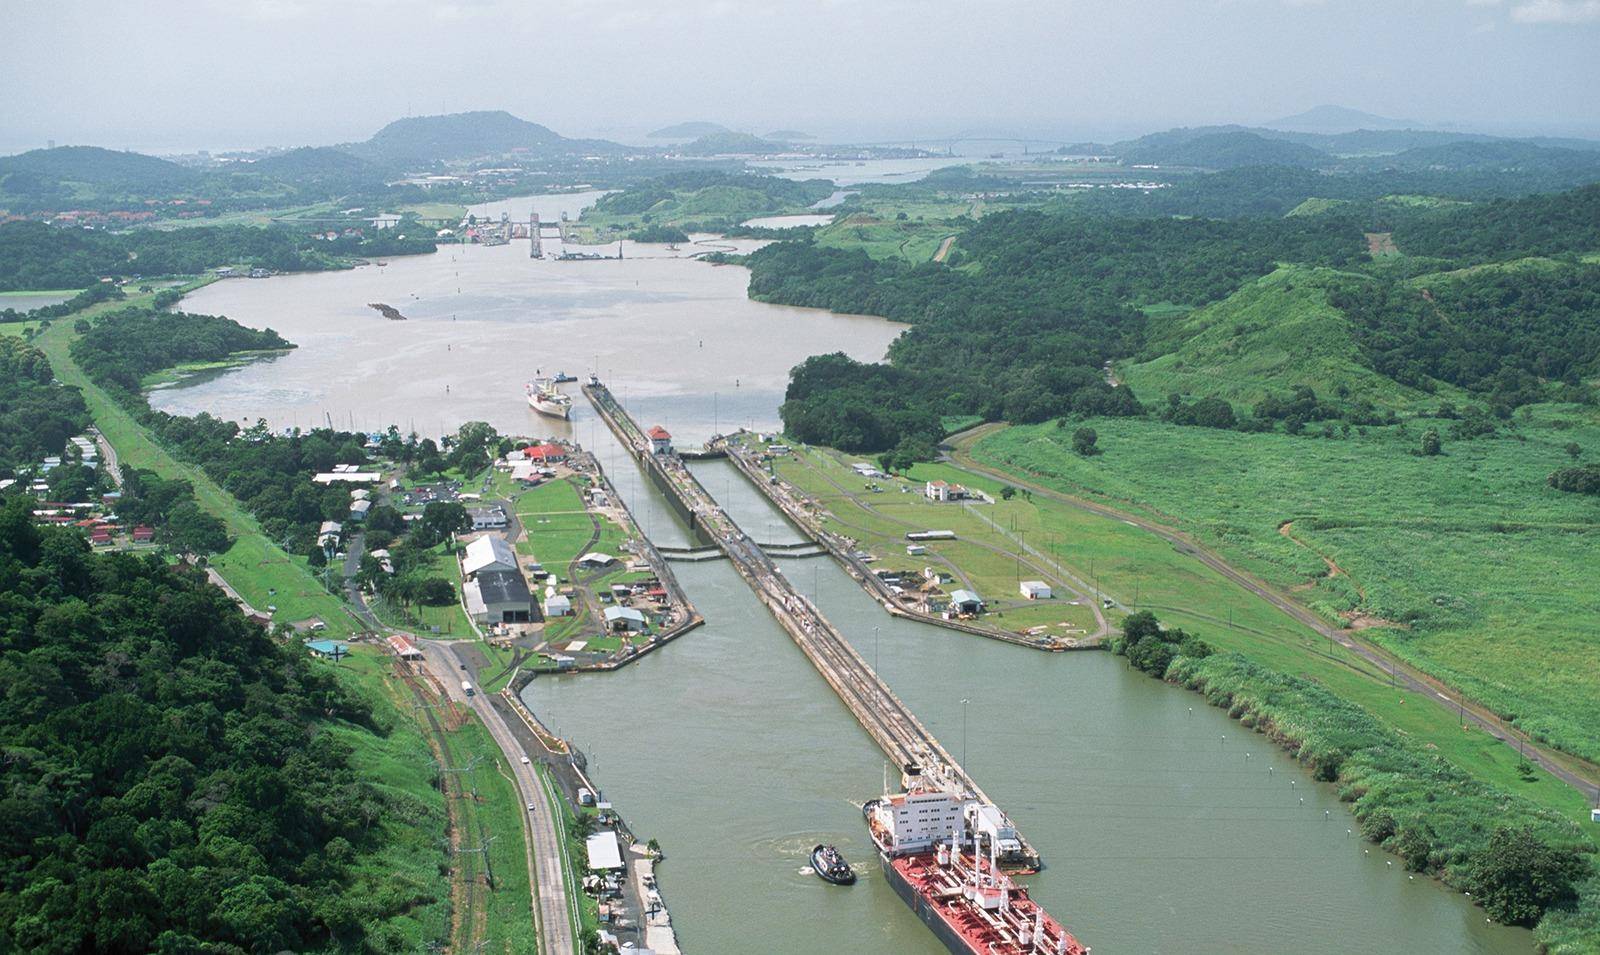 开凿480年的运河:耗资23亿美元,中国每年交百亿过路费